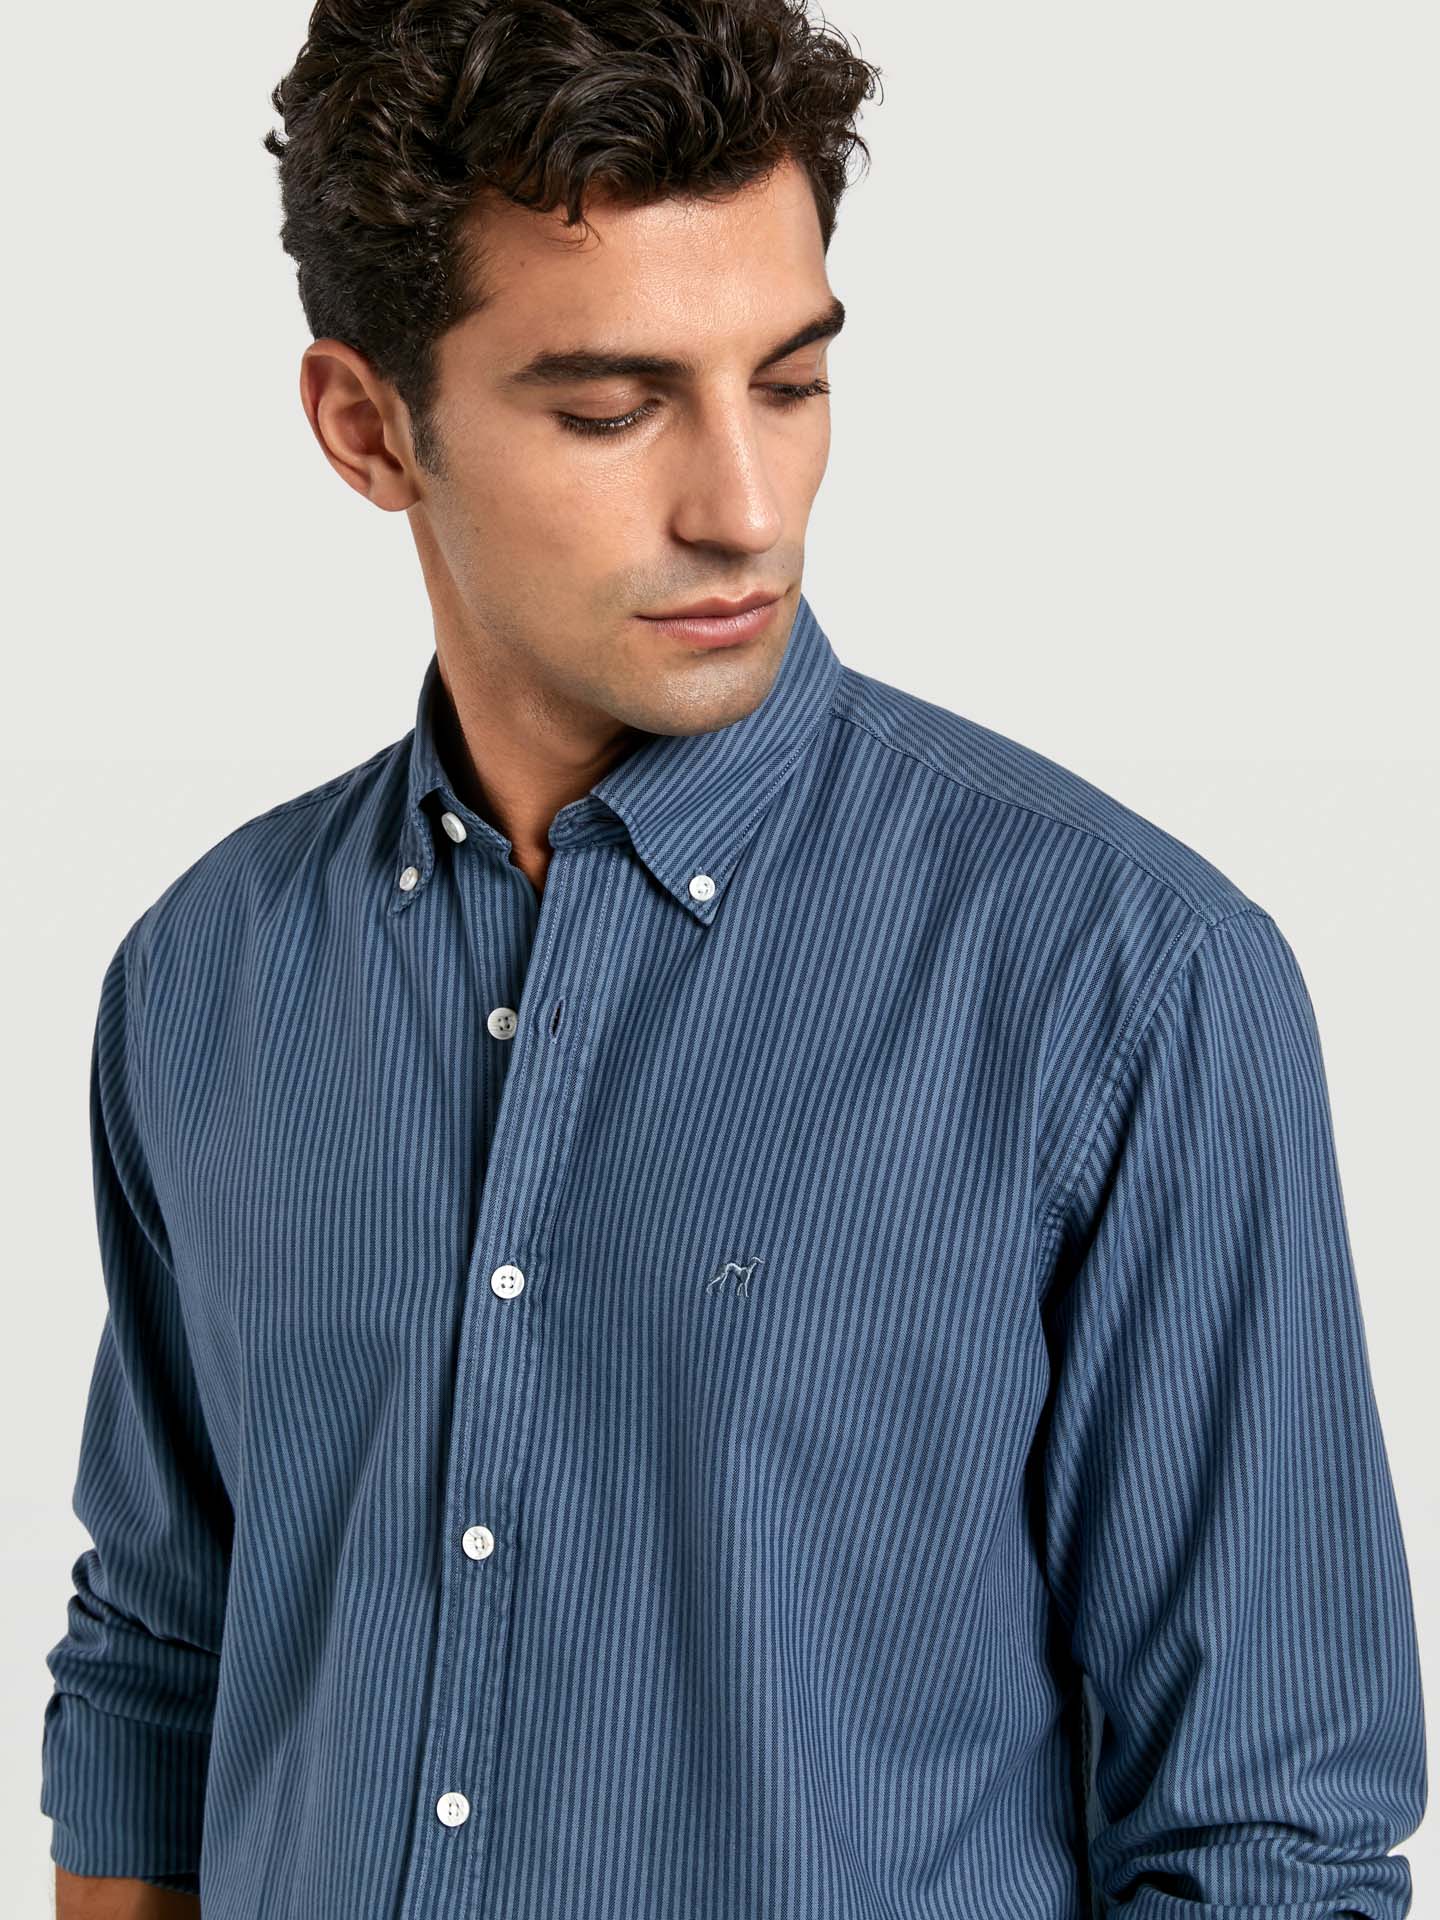 Regular Fit 100% Bci Cotton Garment Dye Striped Oxford Shirt